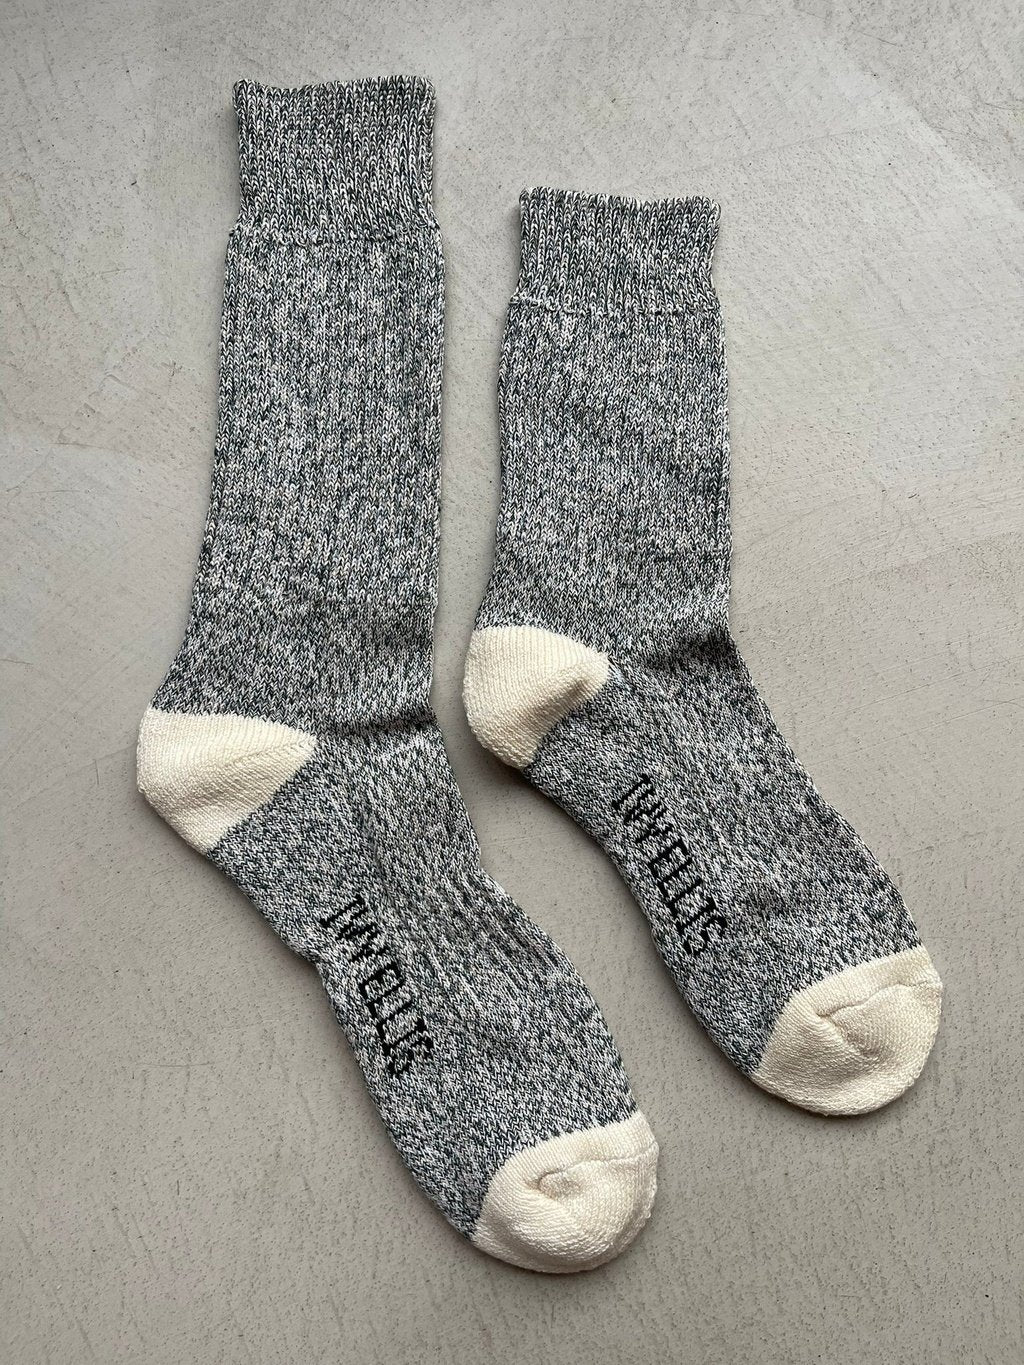 The Tideline | Women's Quarter Length Socks by Ivy Ellis Socks 